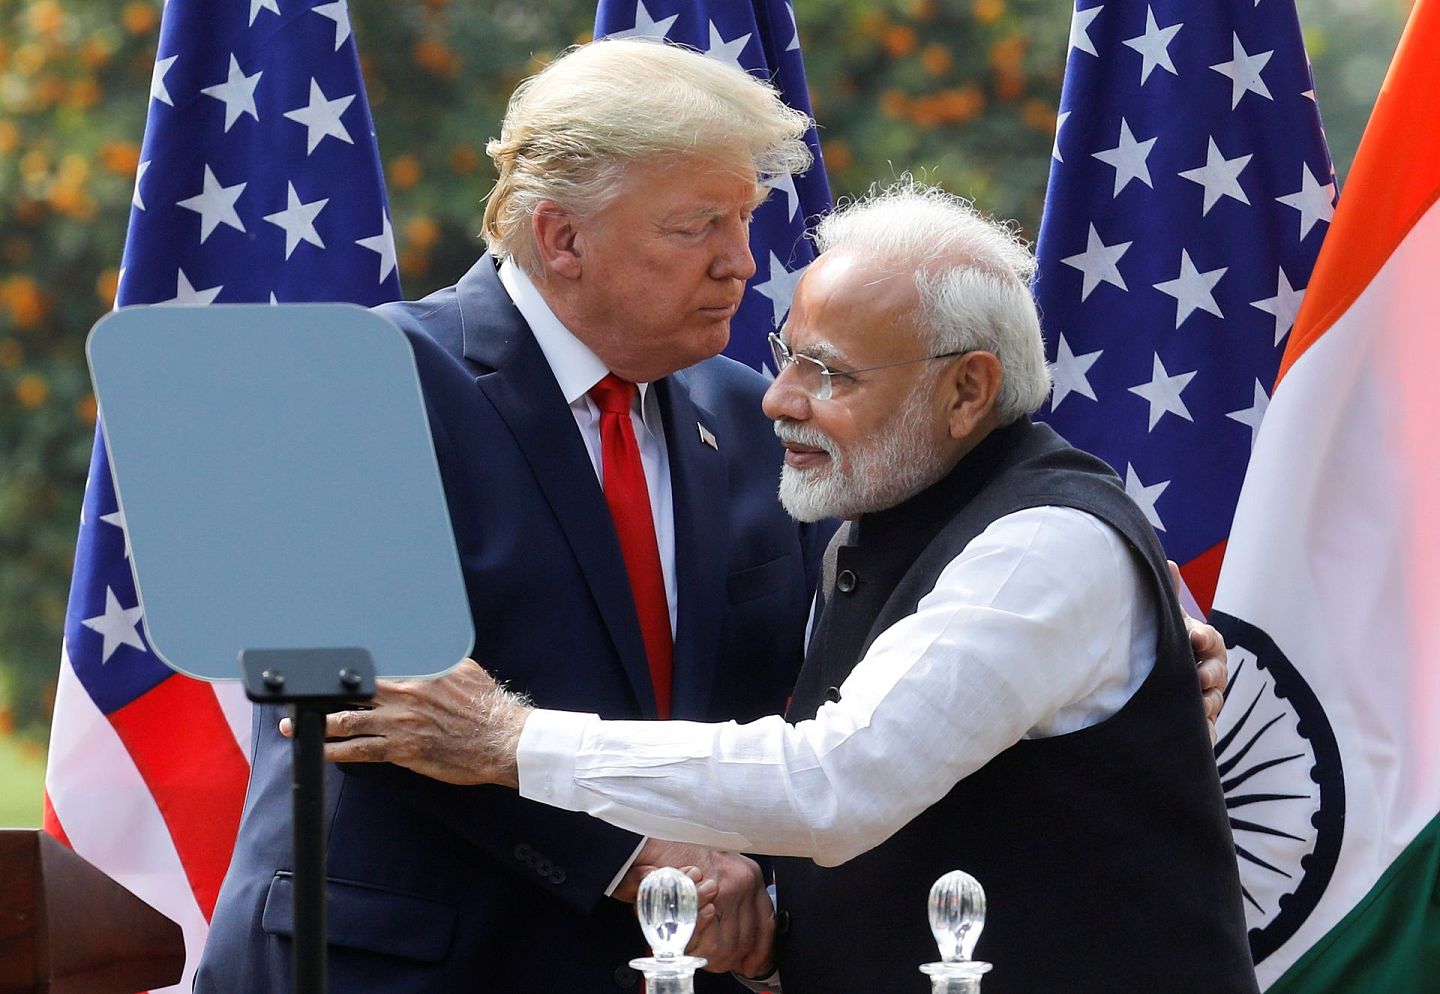 随着印度国内自身矛盾的加剧和经济的下滑，莫迪（右）已经将自身的政治前途和国家命运寄托于美国特朗普政府的支持。图为2月24日,美国总统特朗普访问印度与莫迪握手拥抱。（Reuters）